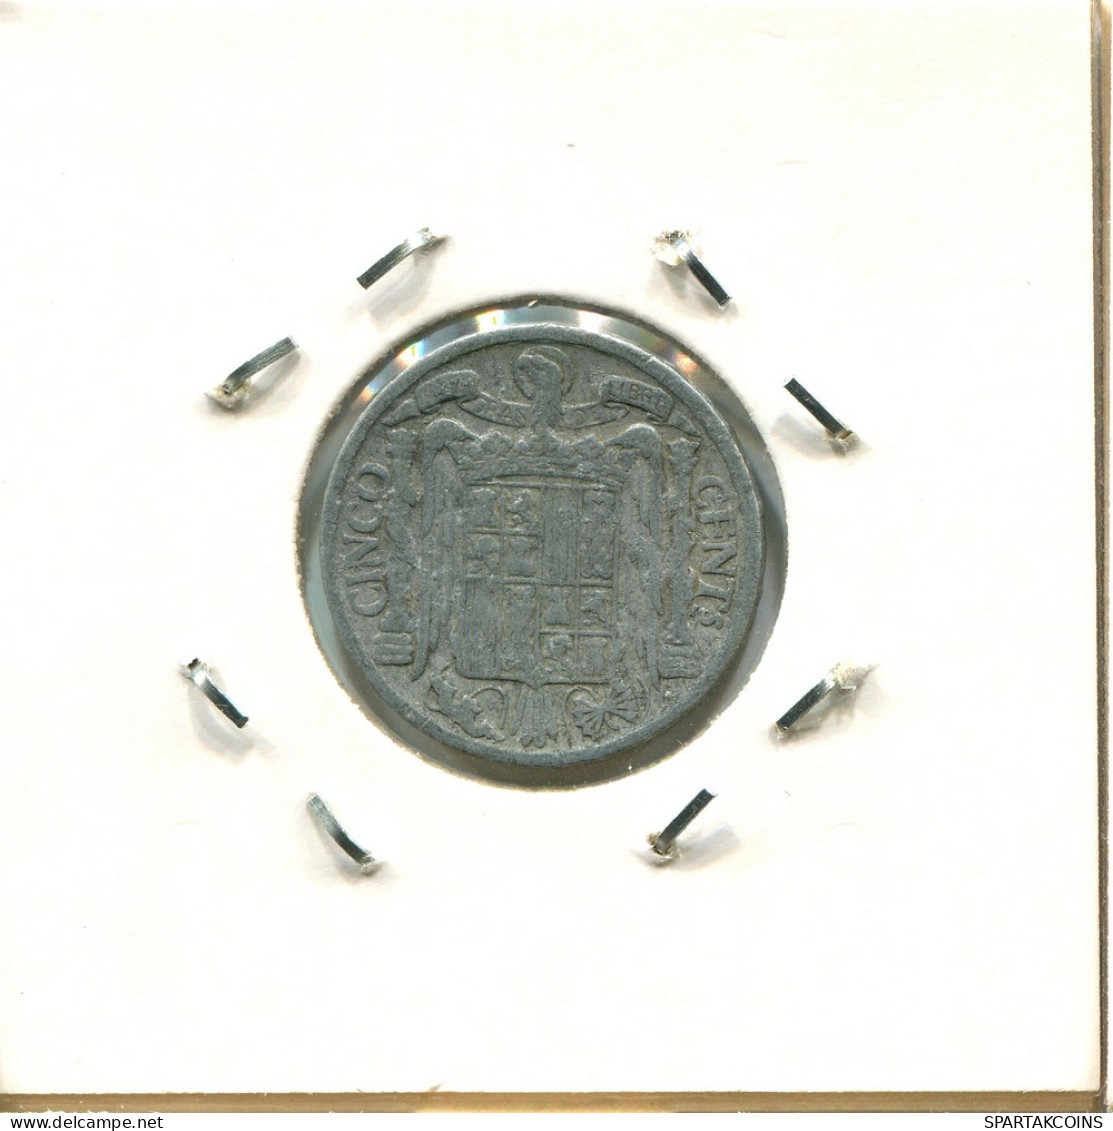 5 CENTIMOS 1945 ESPAÑA Moneda SPAIN #AZ968.E - 5 Centiemen